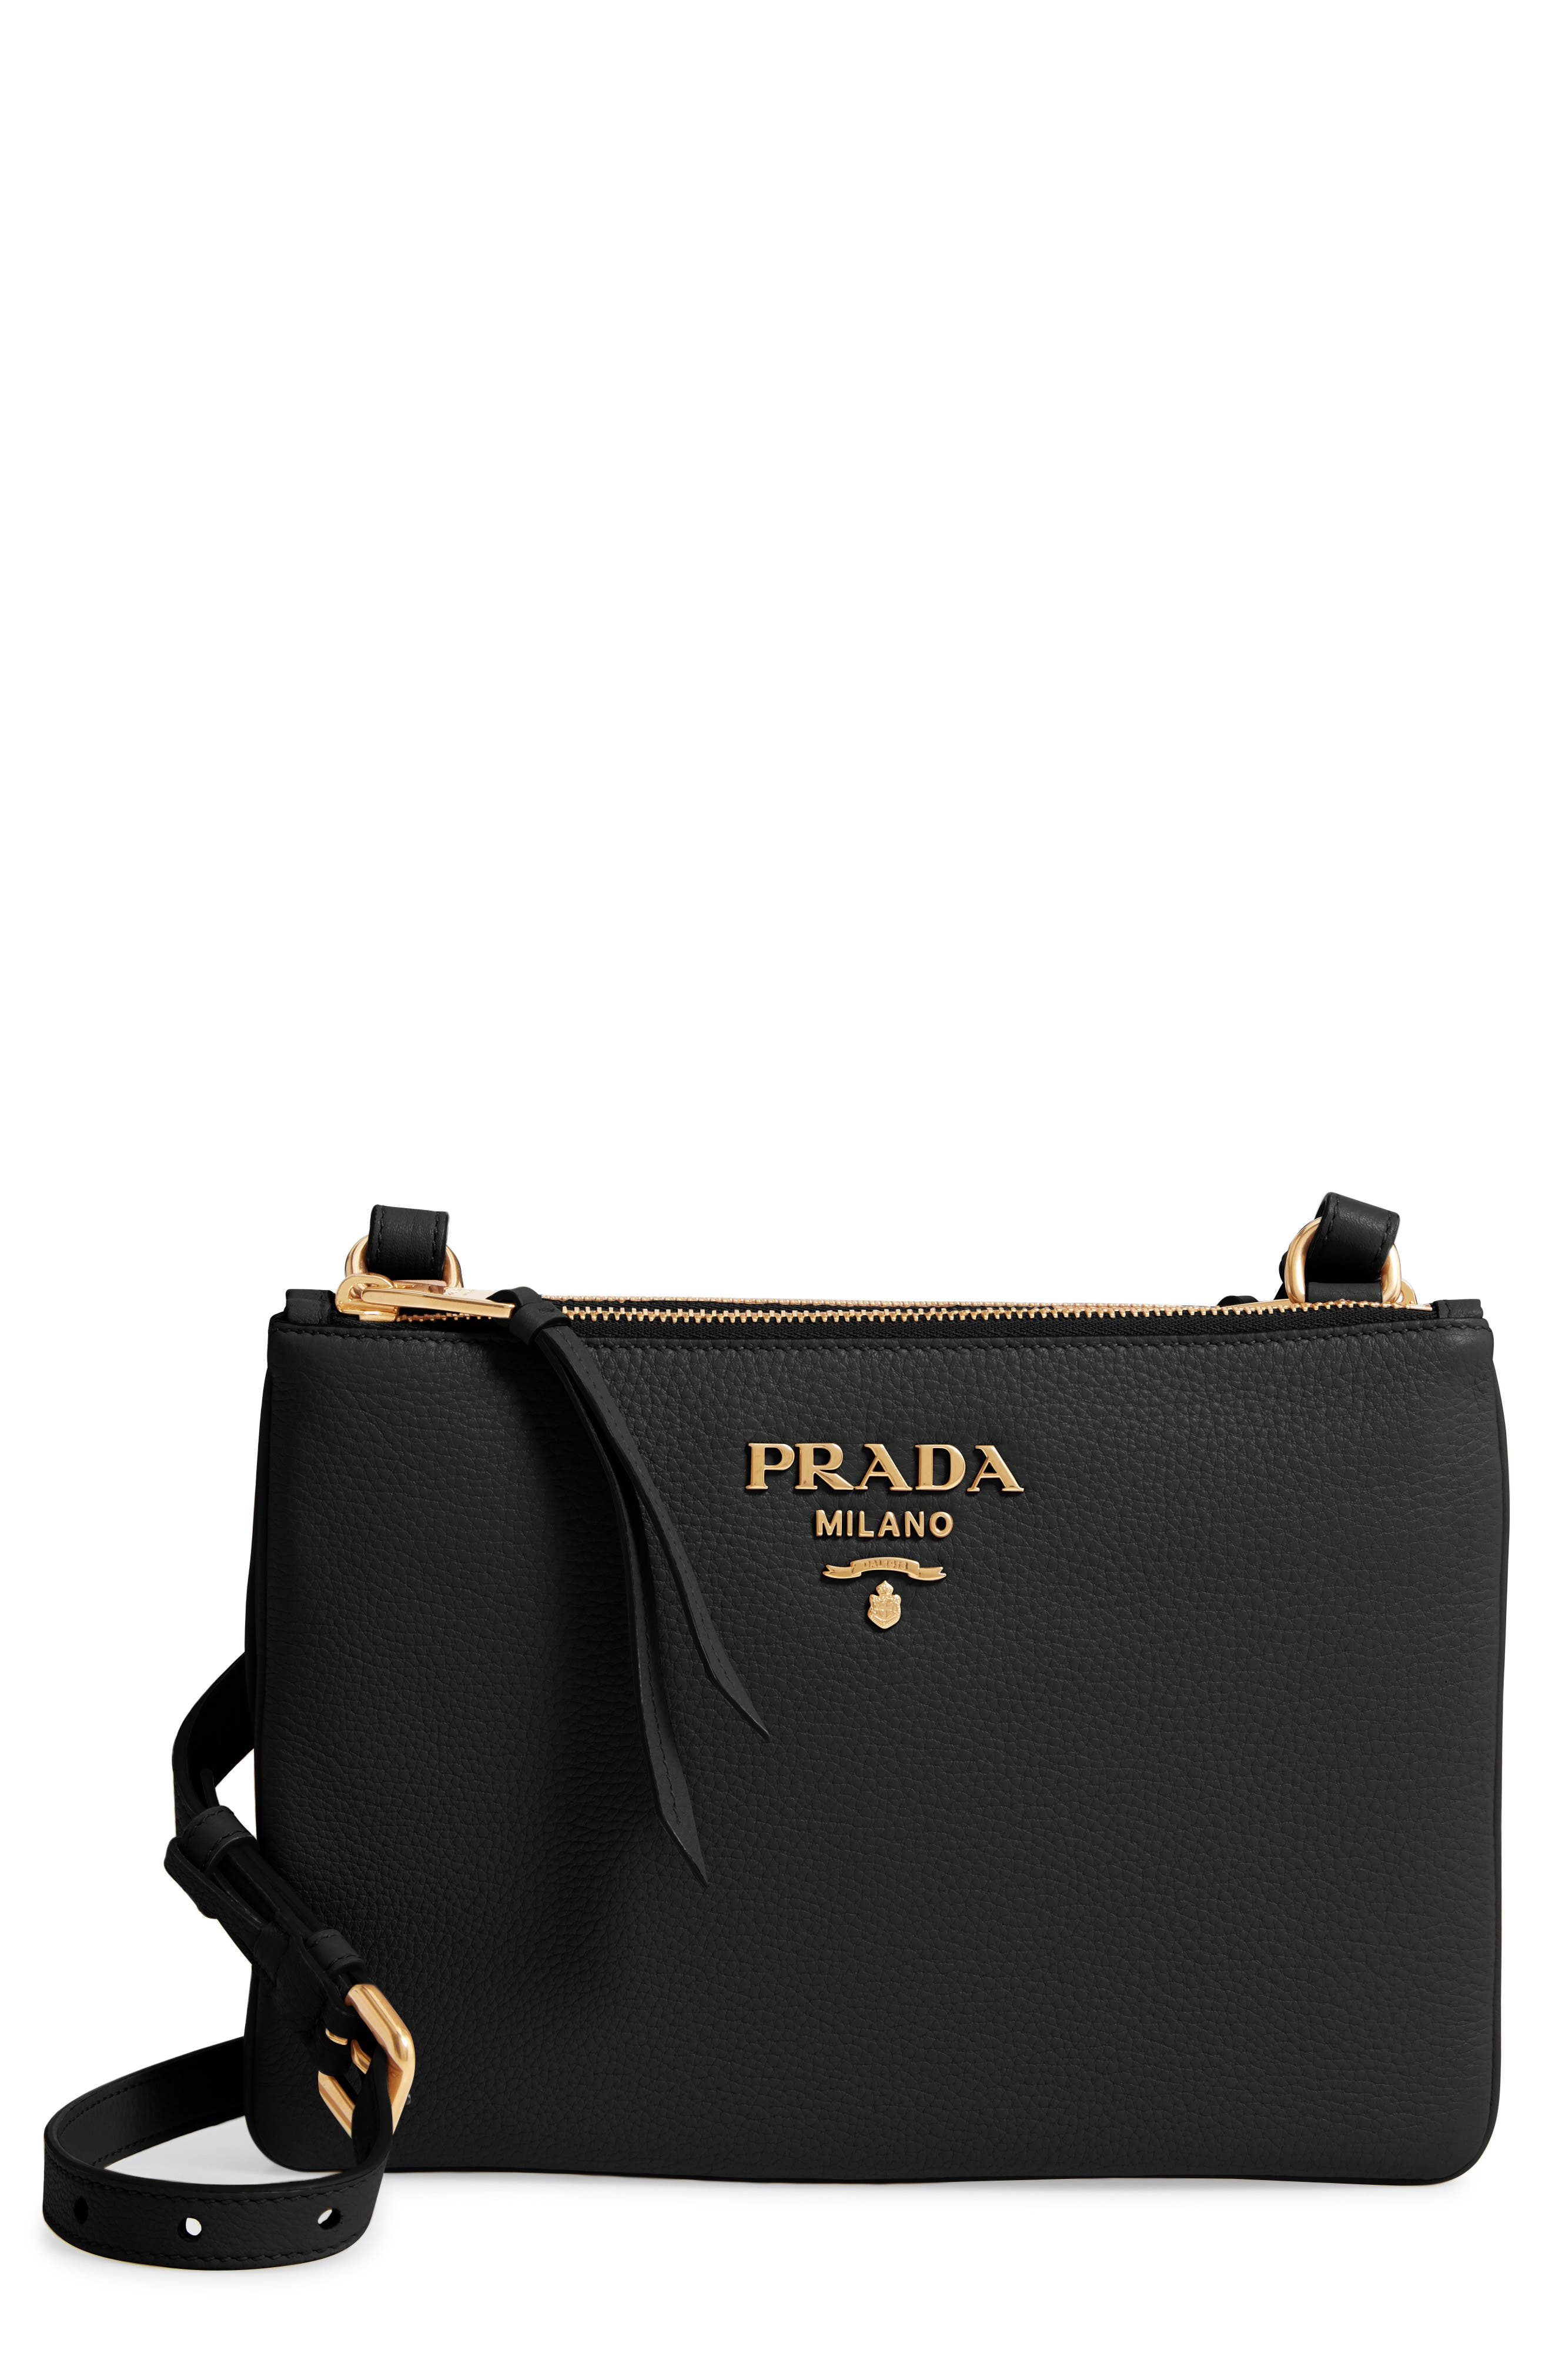 Prada Daino Double Compartment Leather 